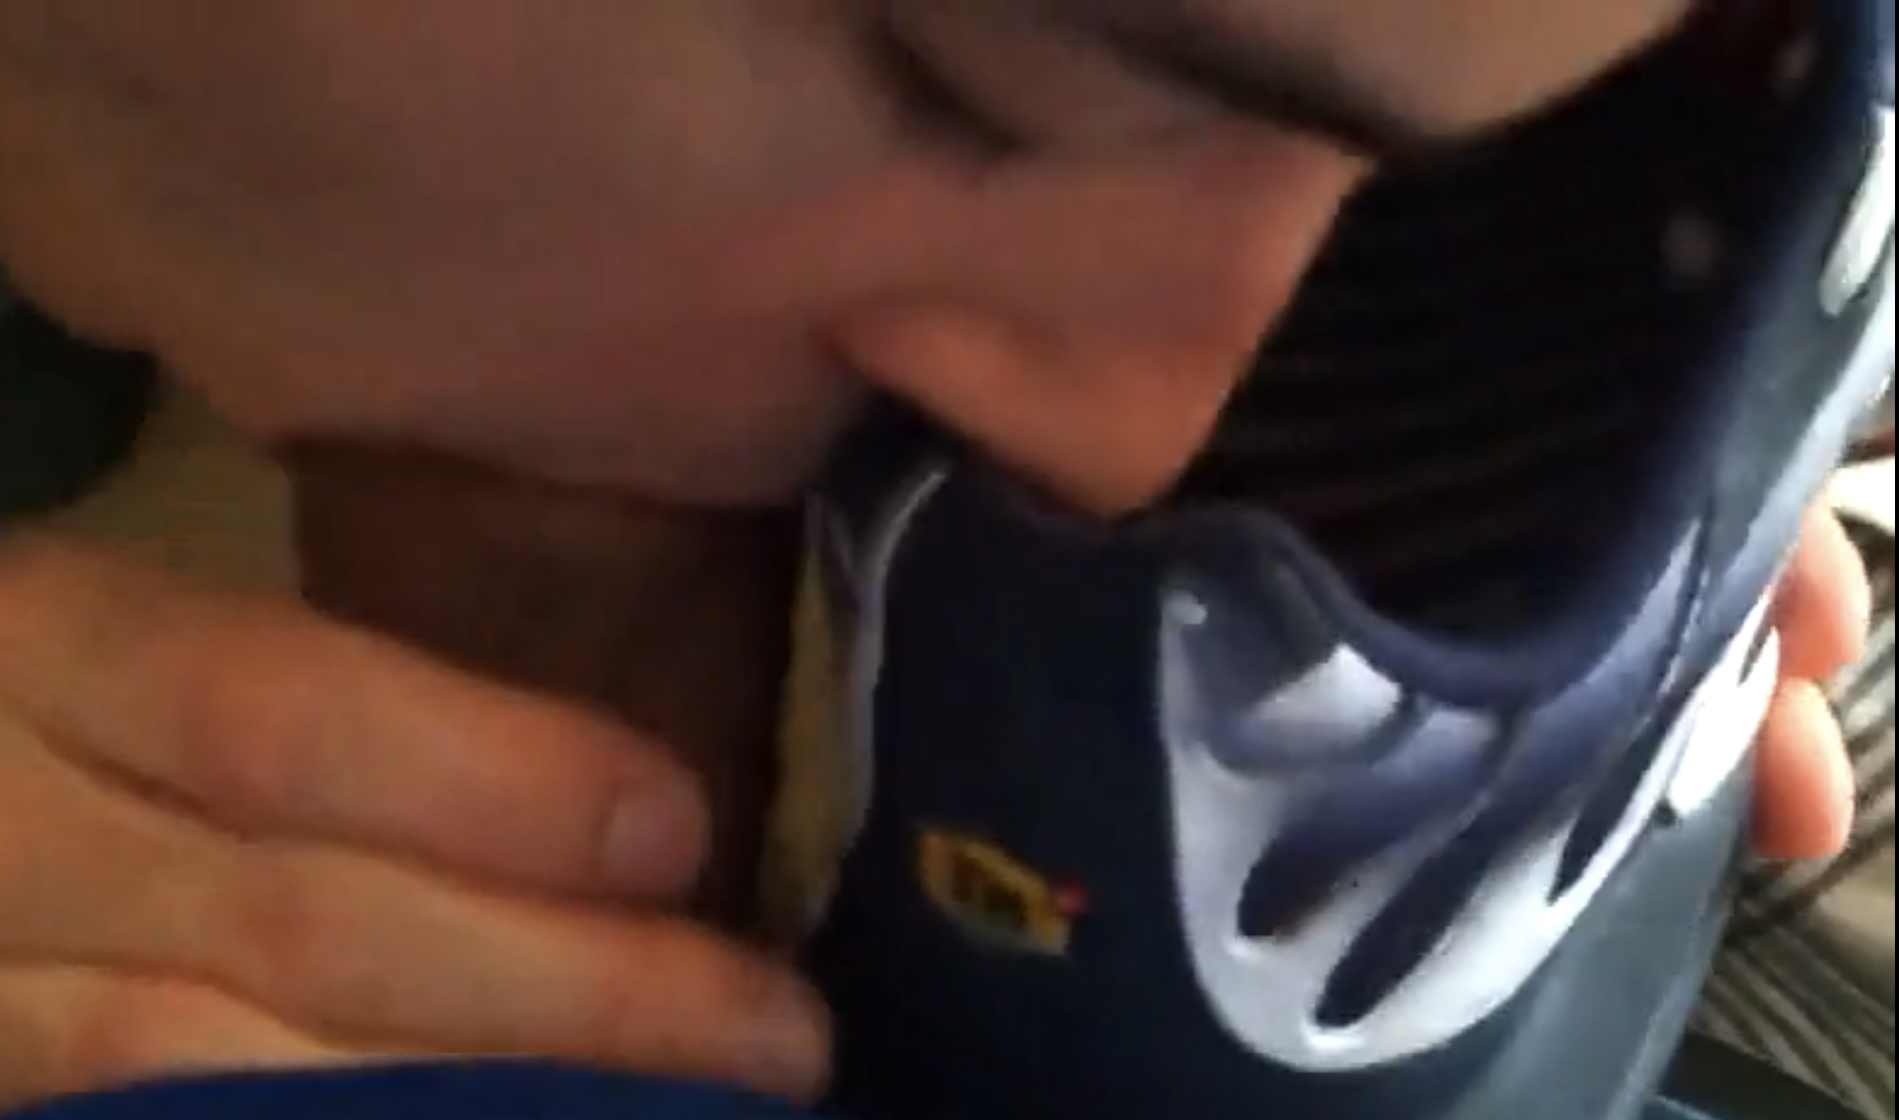 Cute chav sniffs Nike TN while sucking friend off